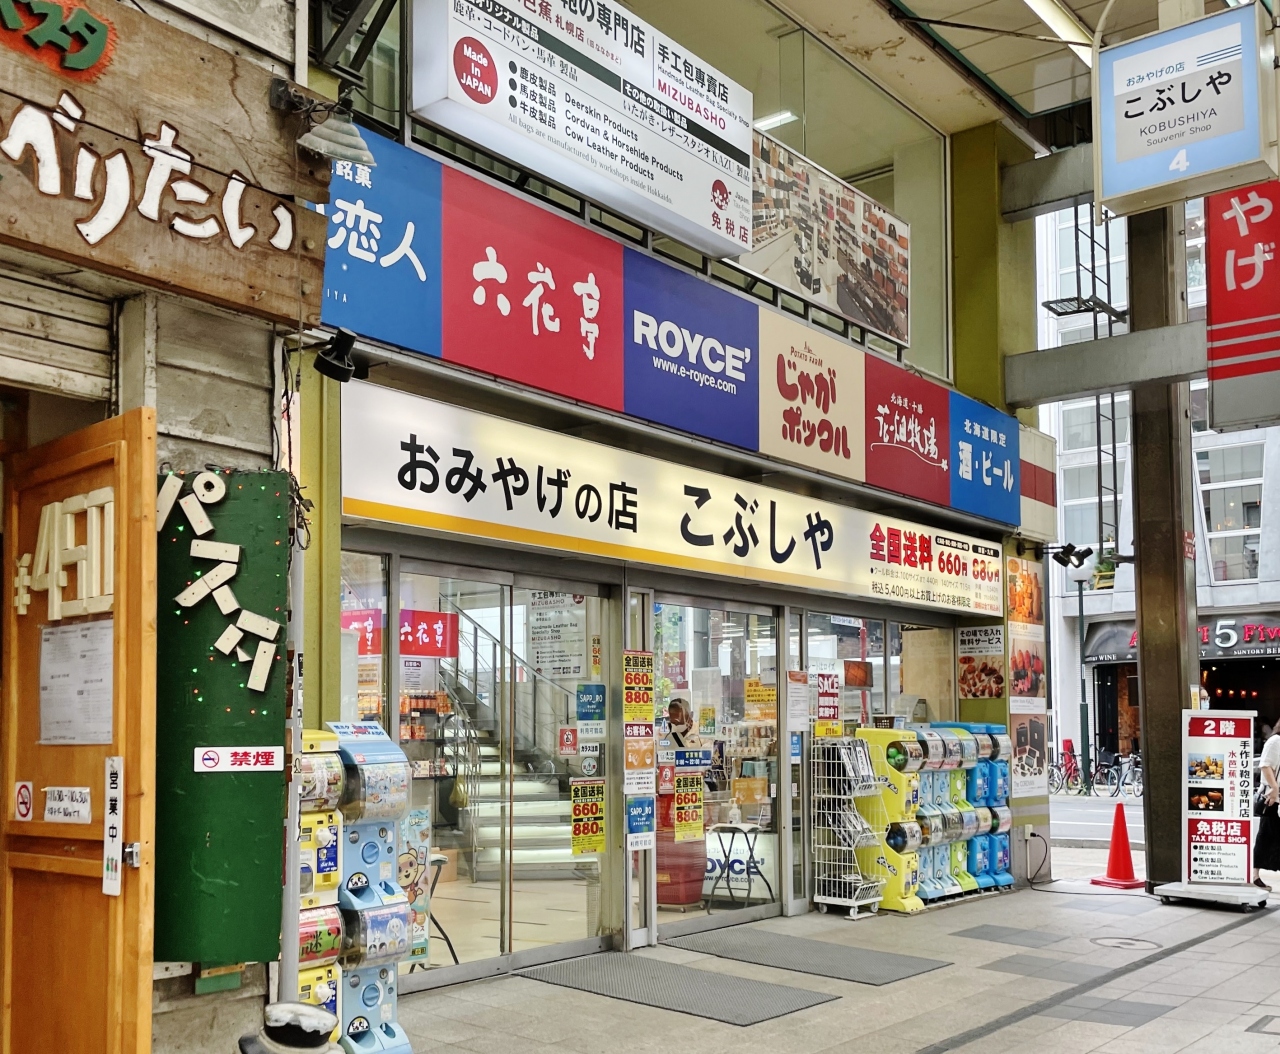 札幌のお土産のおすすめスポット25選　23位:おみやげの店 こぶしや 札幌店